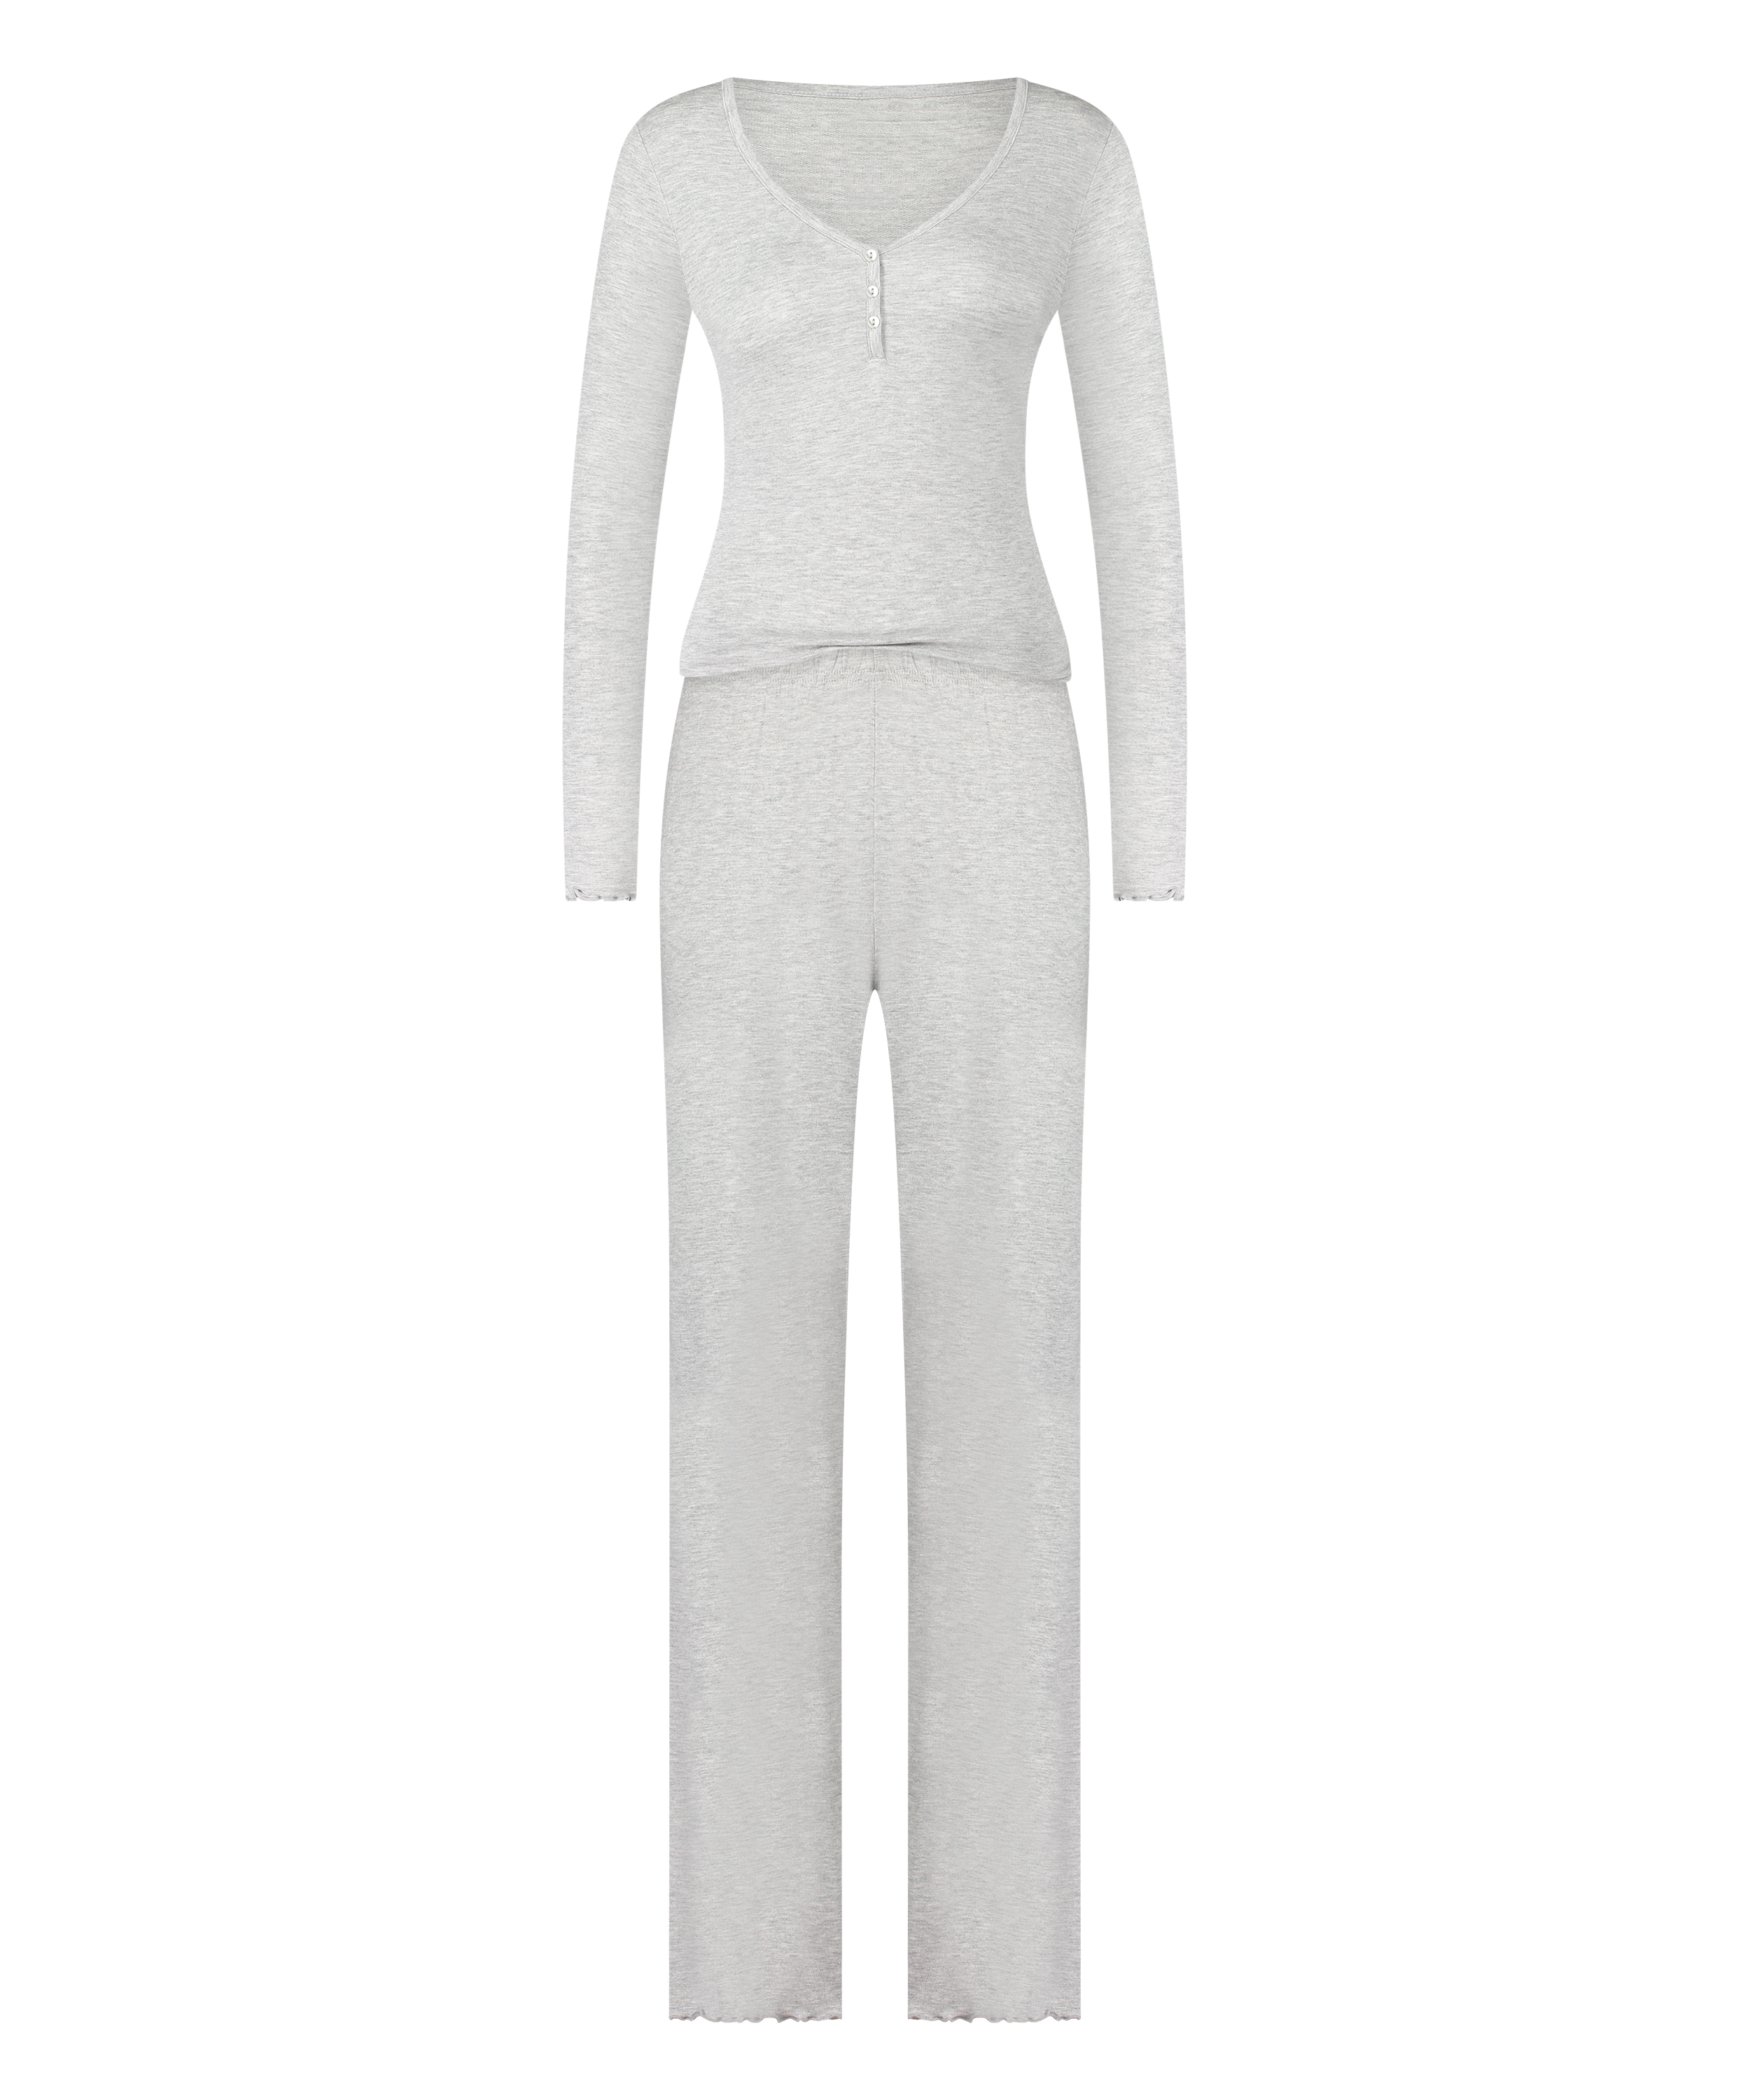 Pajama Set, Gray, main